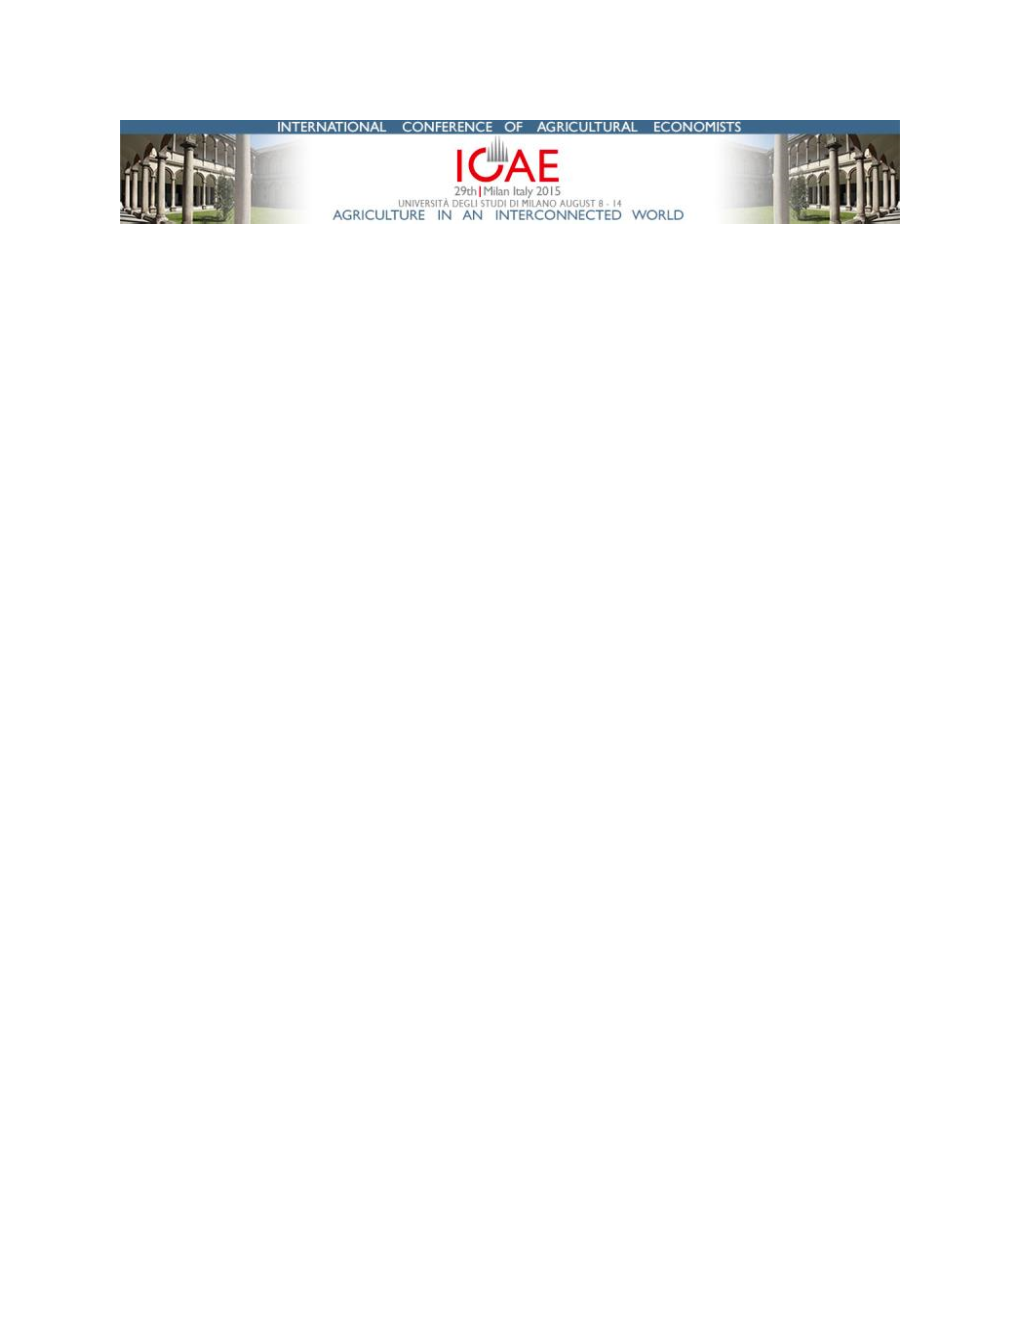 ICAE 2015 Valdiviapaper.Pdf